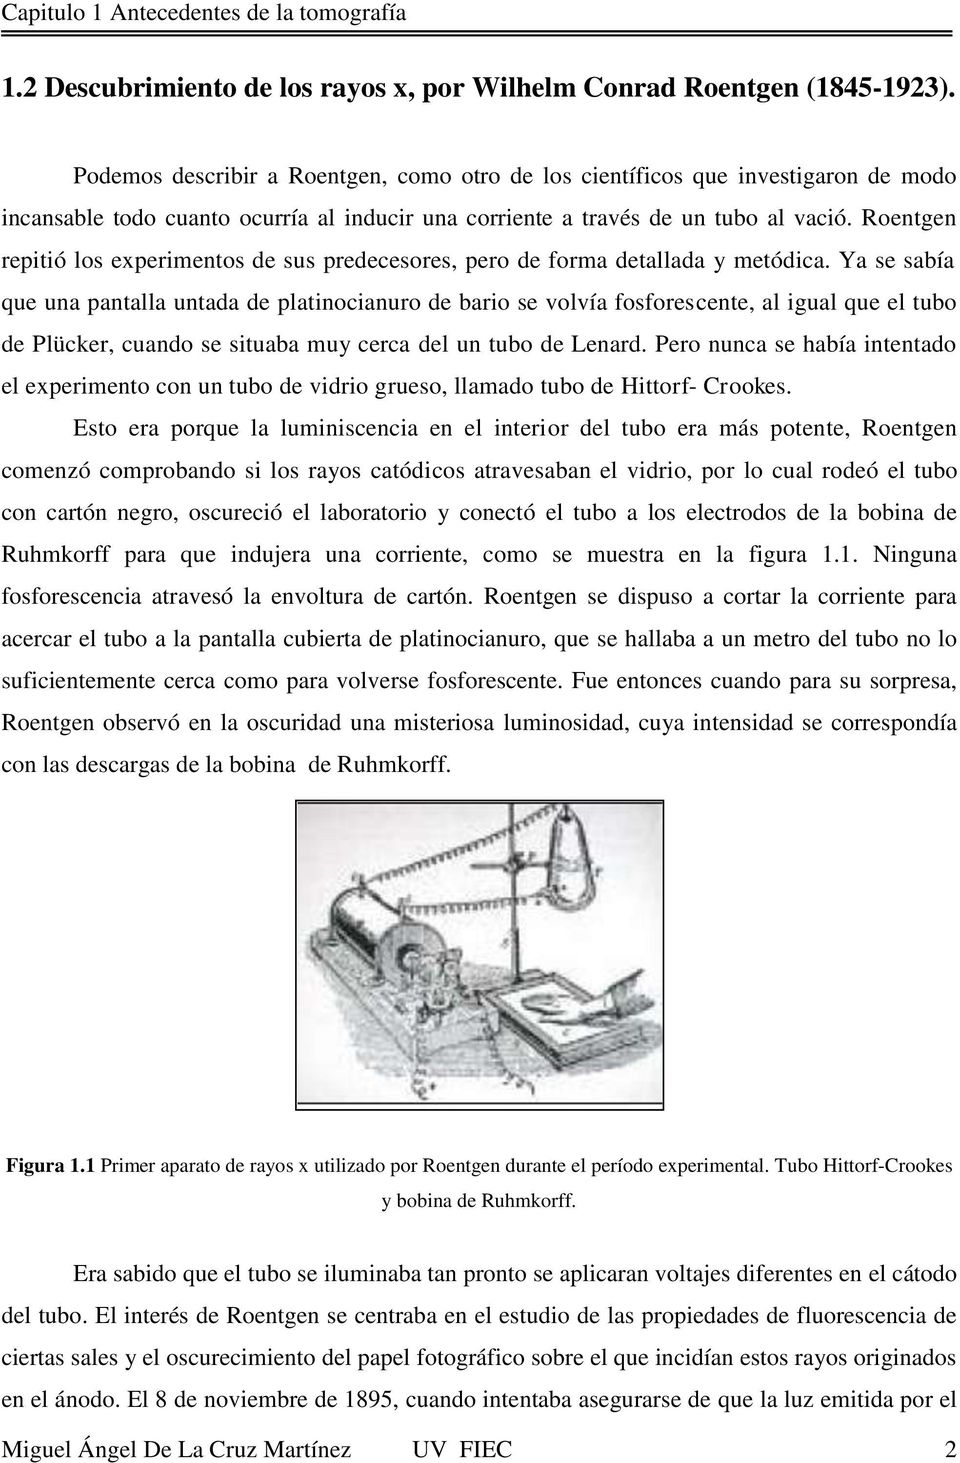 Roentgen repitió los experimentos de sus predecesores, pero de forma detallada y metódica.